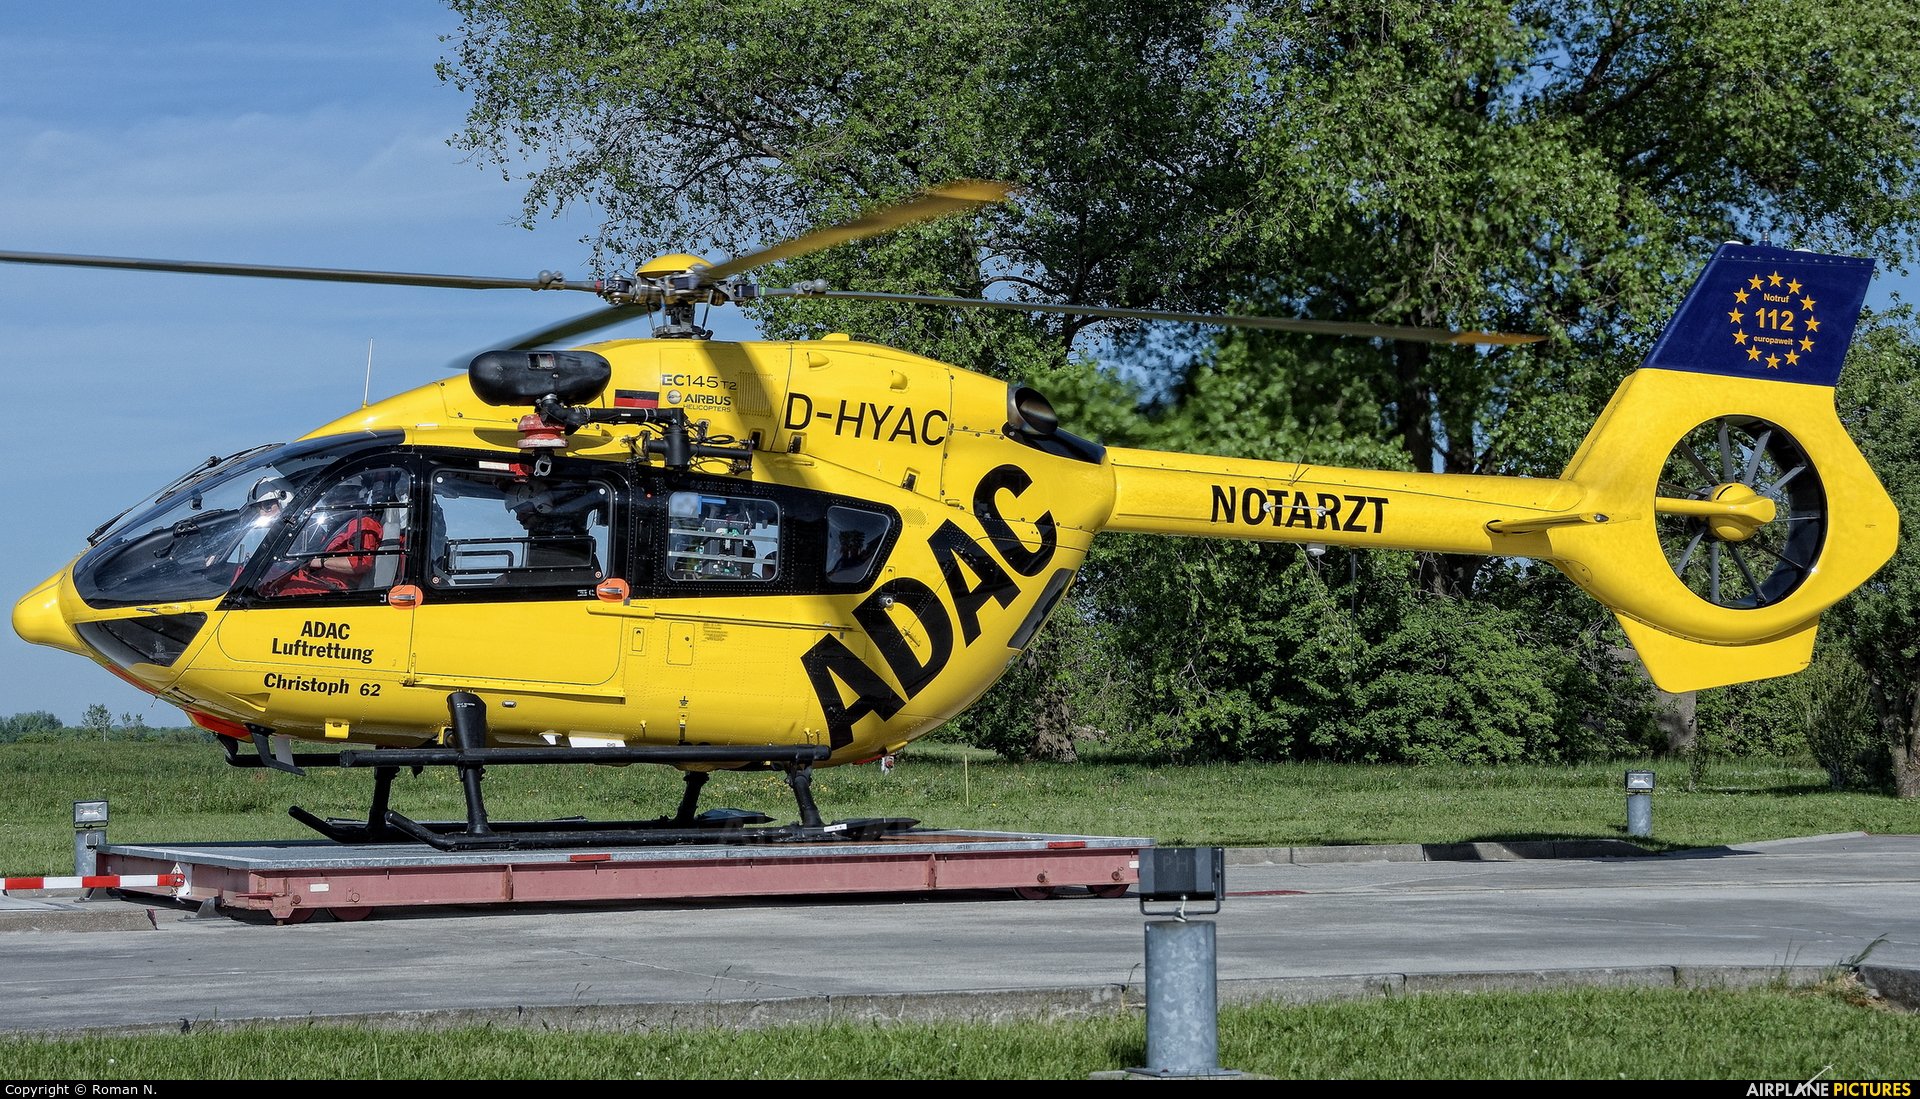 ADAC Luftrettung D-HYAC aircraft at Bautzen